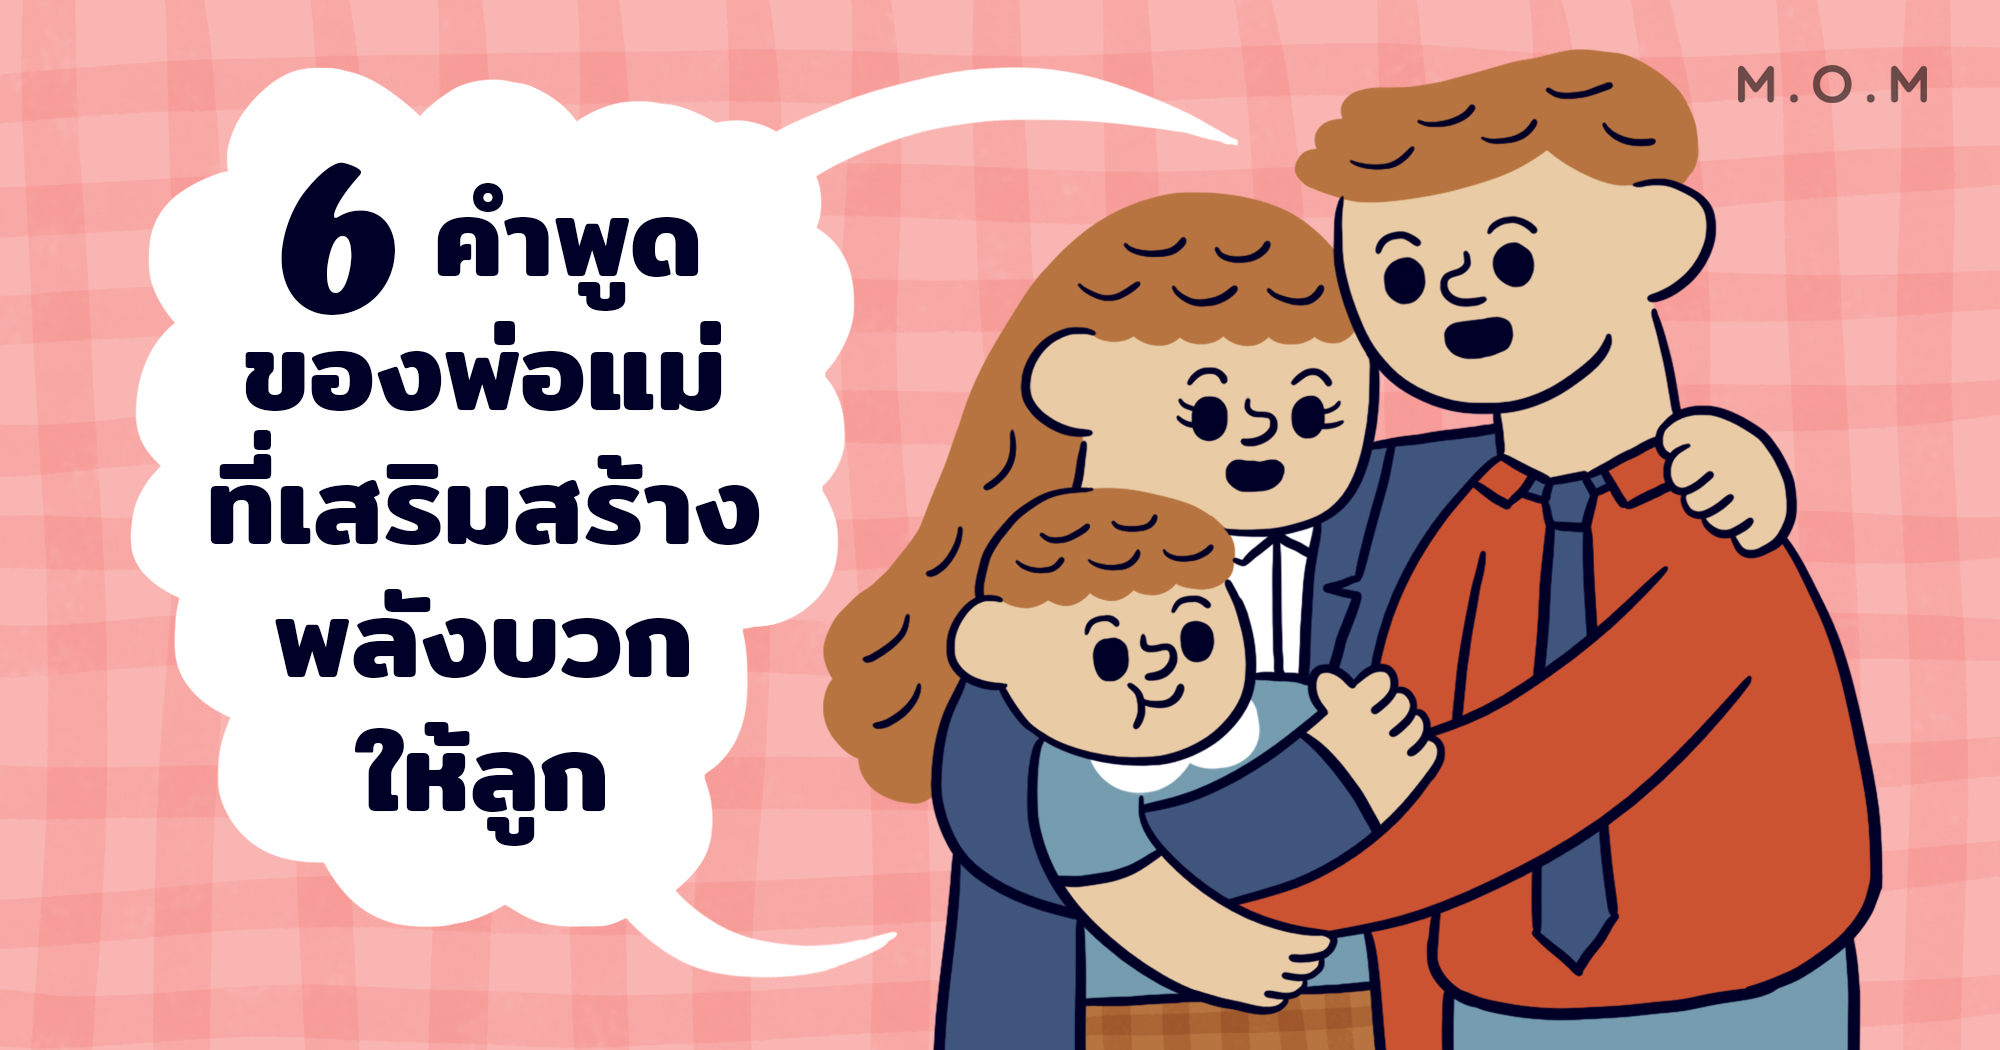 6 คำพูดของพ่อแม่ที่เสริมสร้างพลังบวกให้ลูก - M.O.M